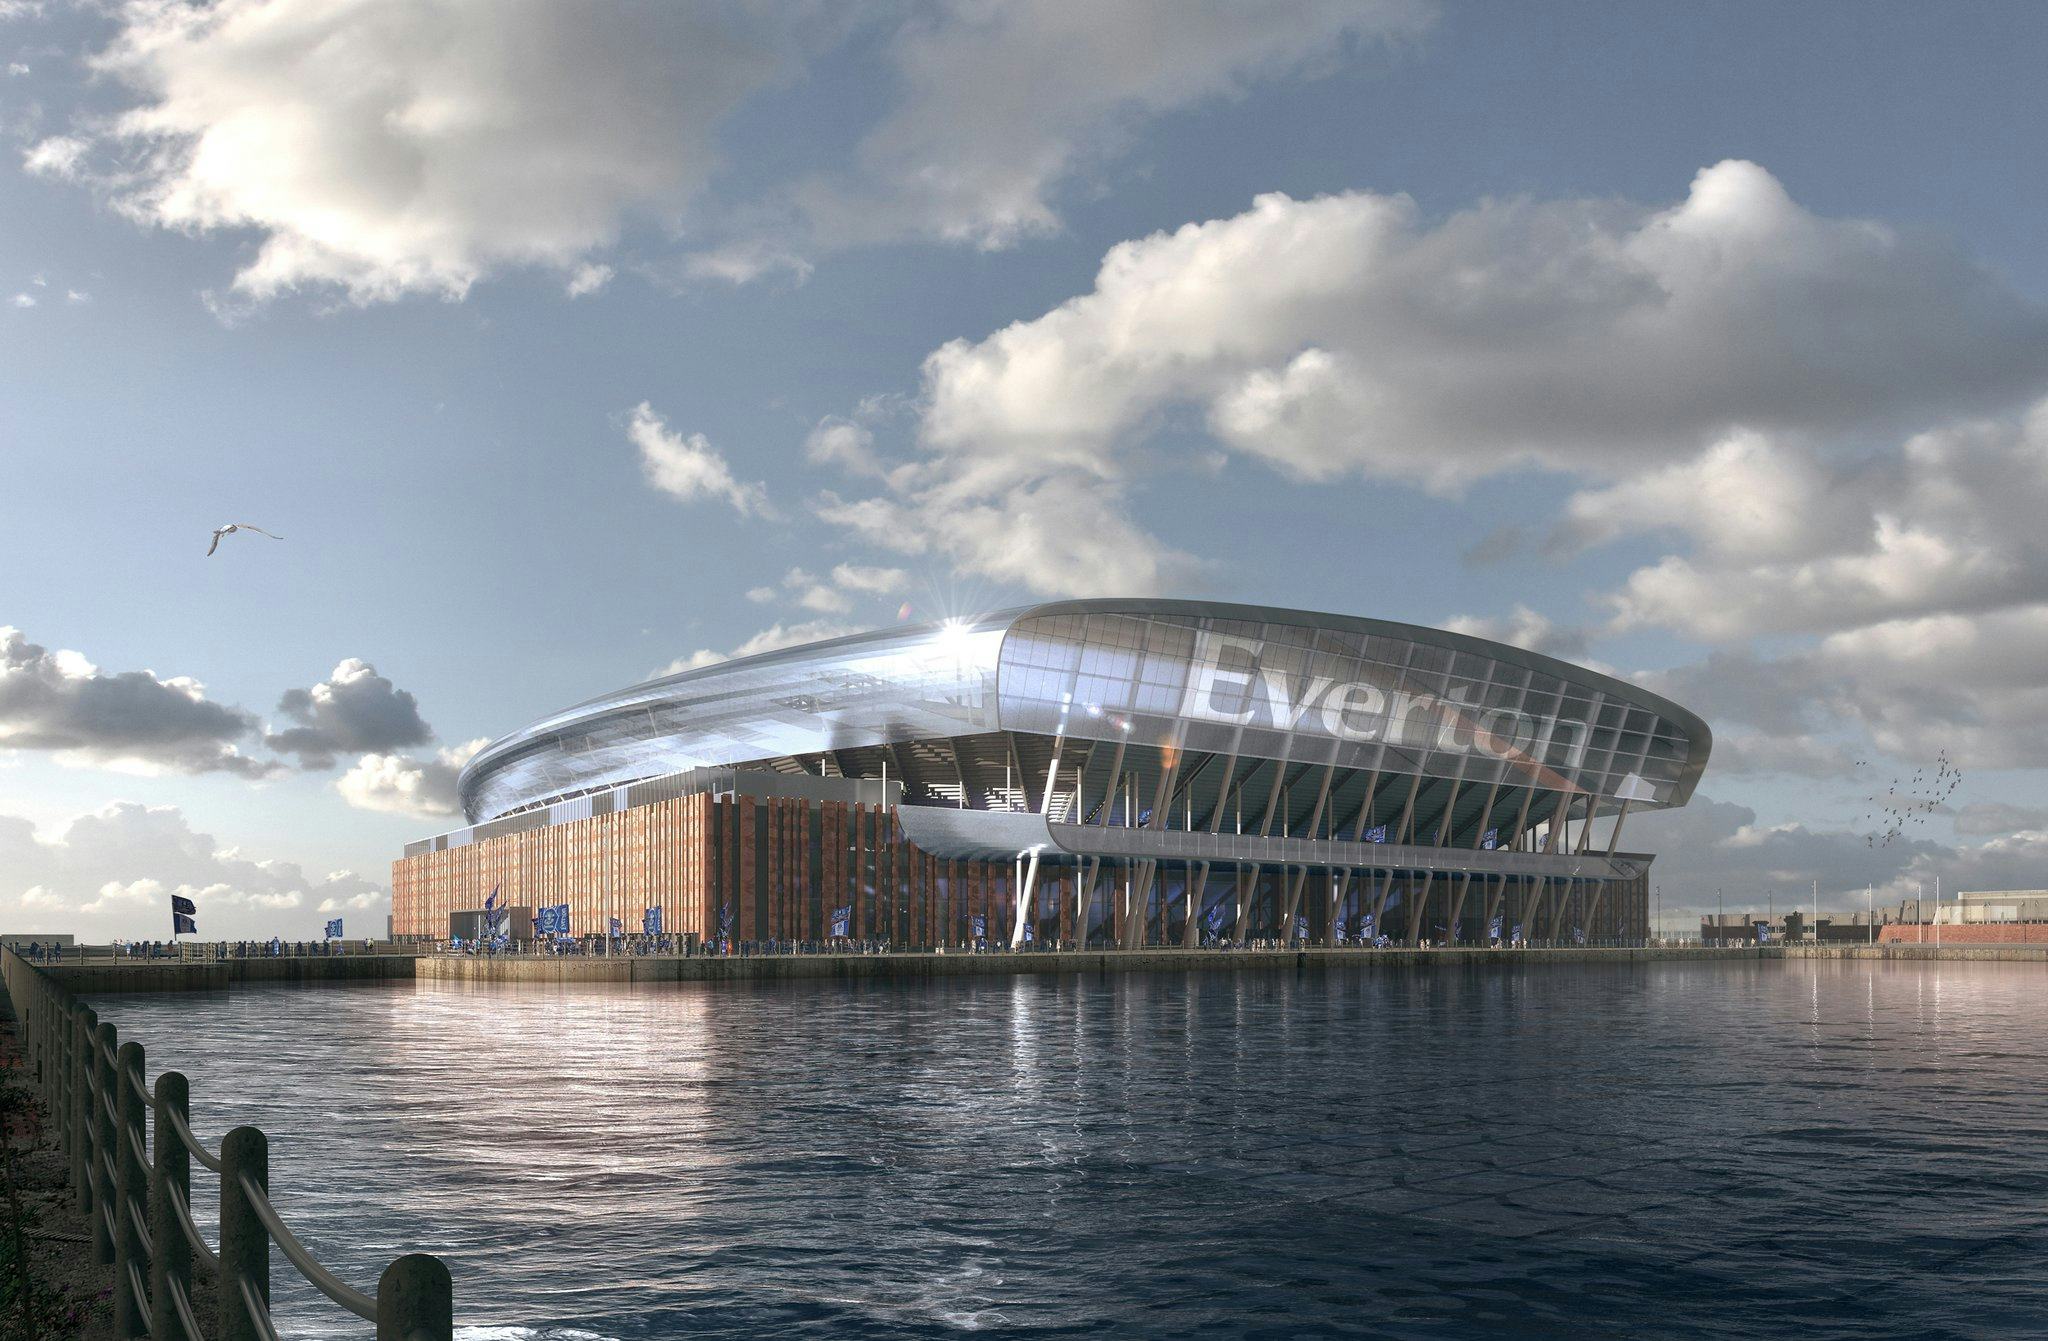 Nieuw stadion voor Everton FC